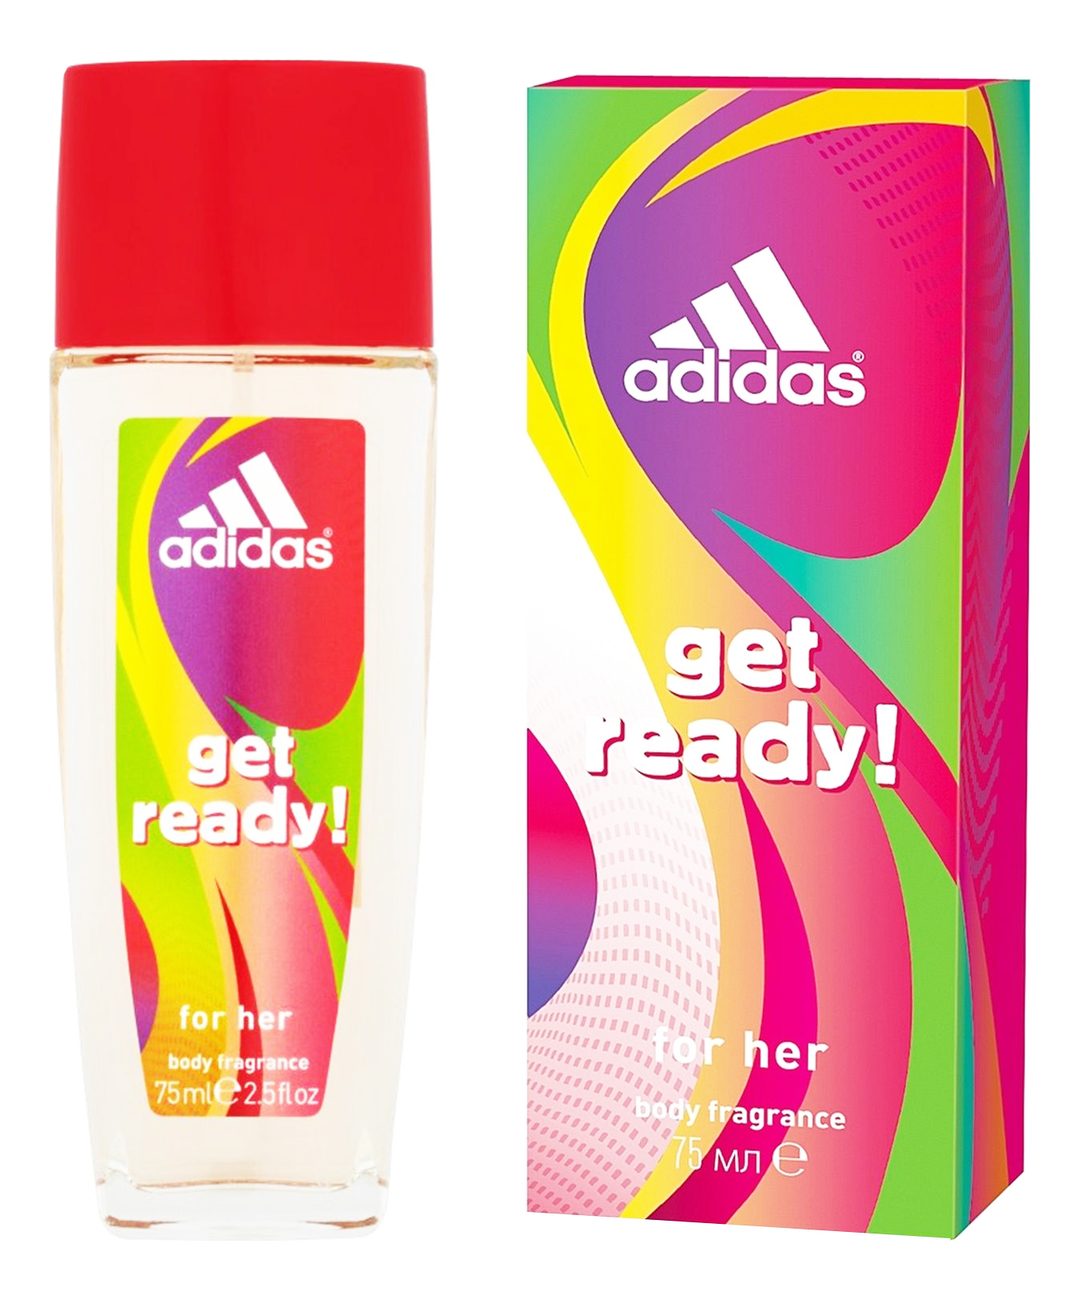 Get Ready! For Her: парфюмерный спрей для тела 75мл